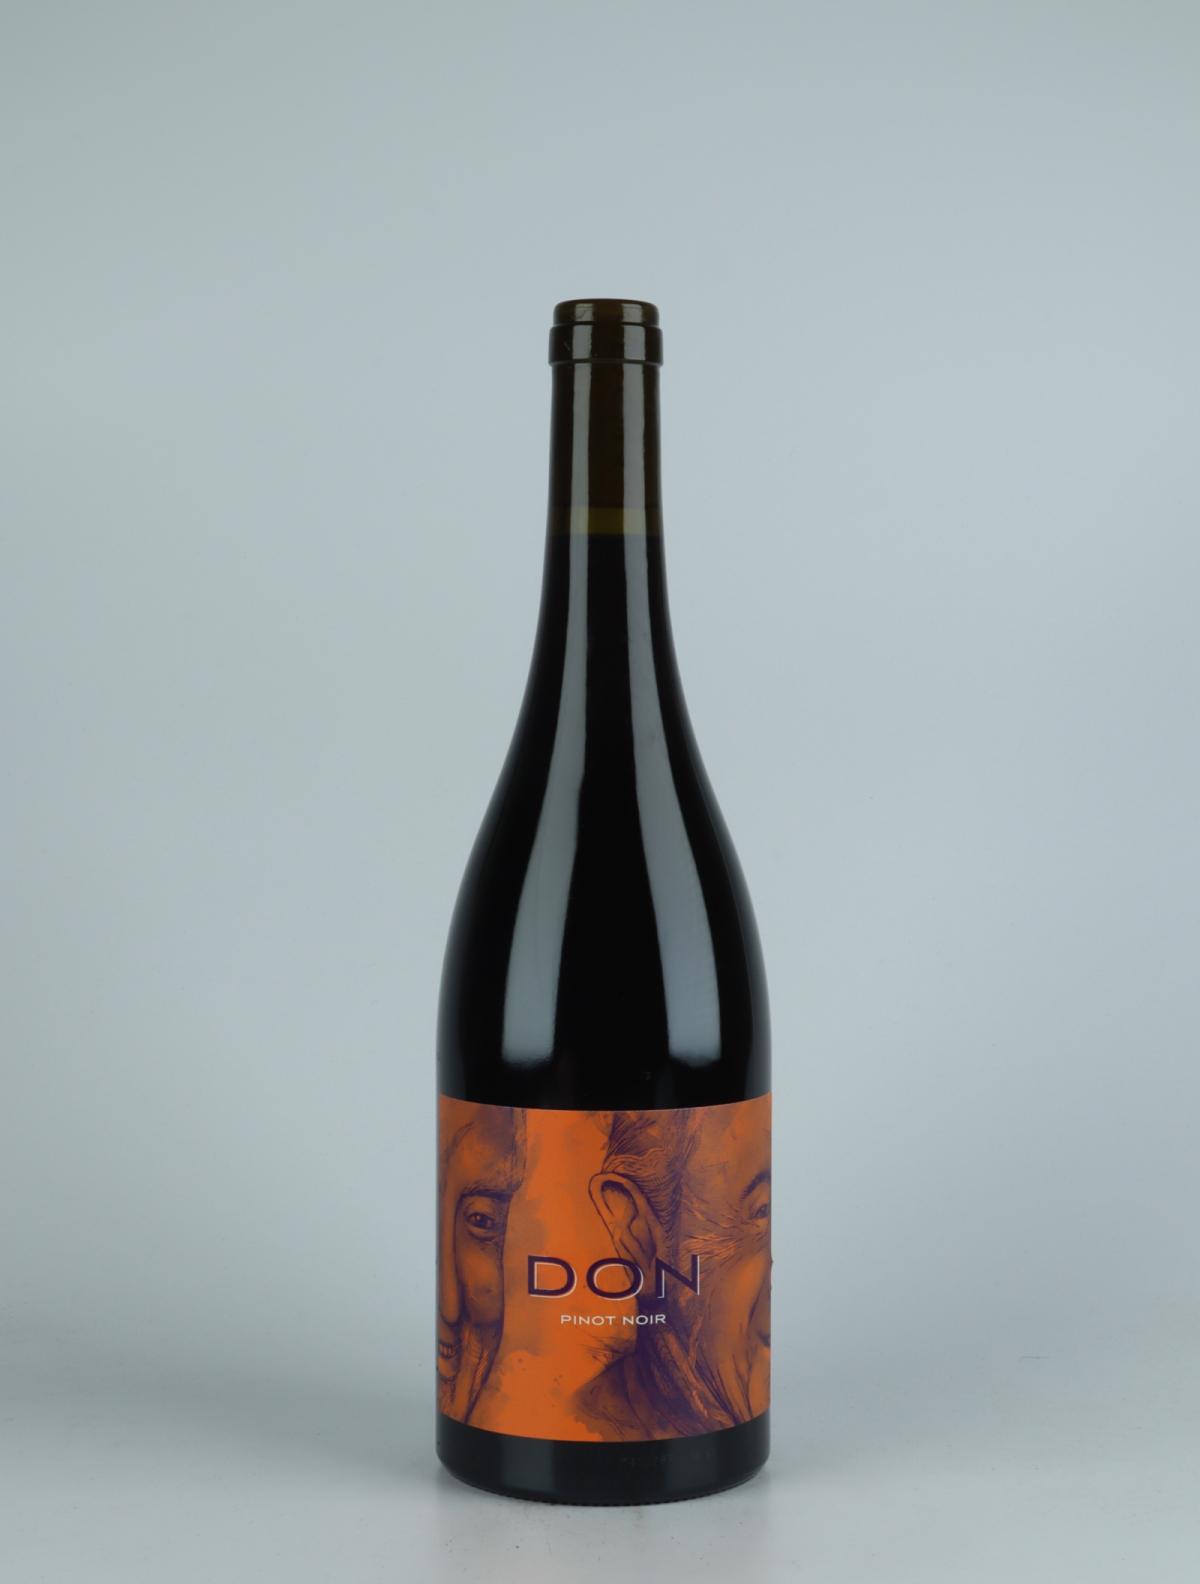 En flaske 2020 Nelson Pinot Noir Rødvin fra Don, Nelson i New Zealand